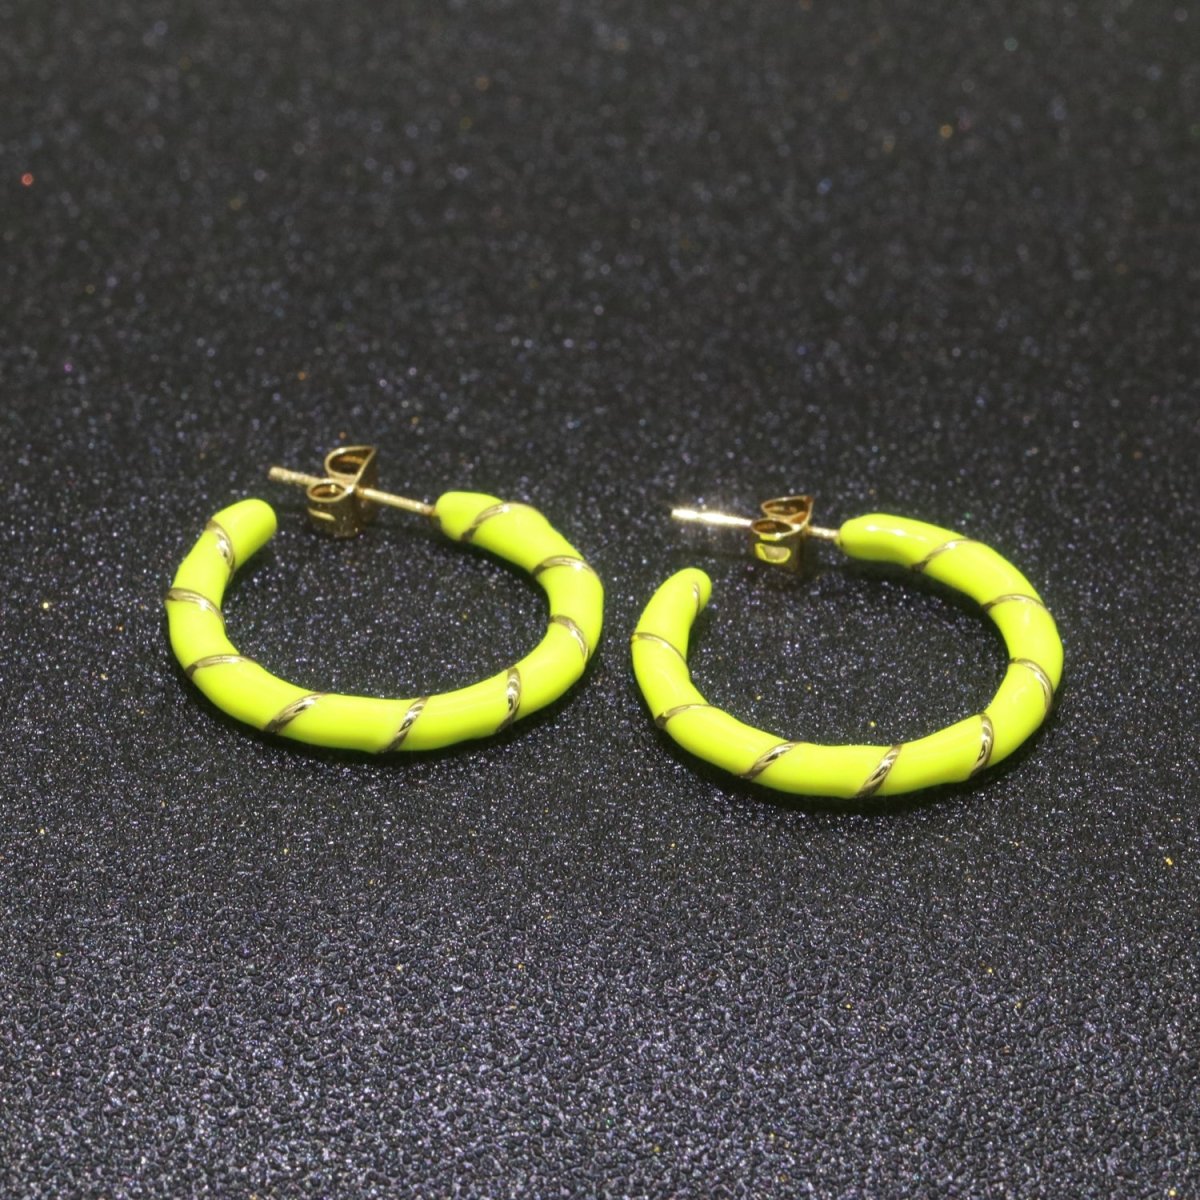 Yellow Enamel Hoop Earring with Gold Swirl 26mm Hoop earring Jewelry Gift T-010 - DLUXCA